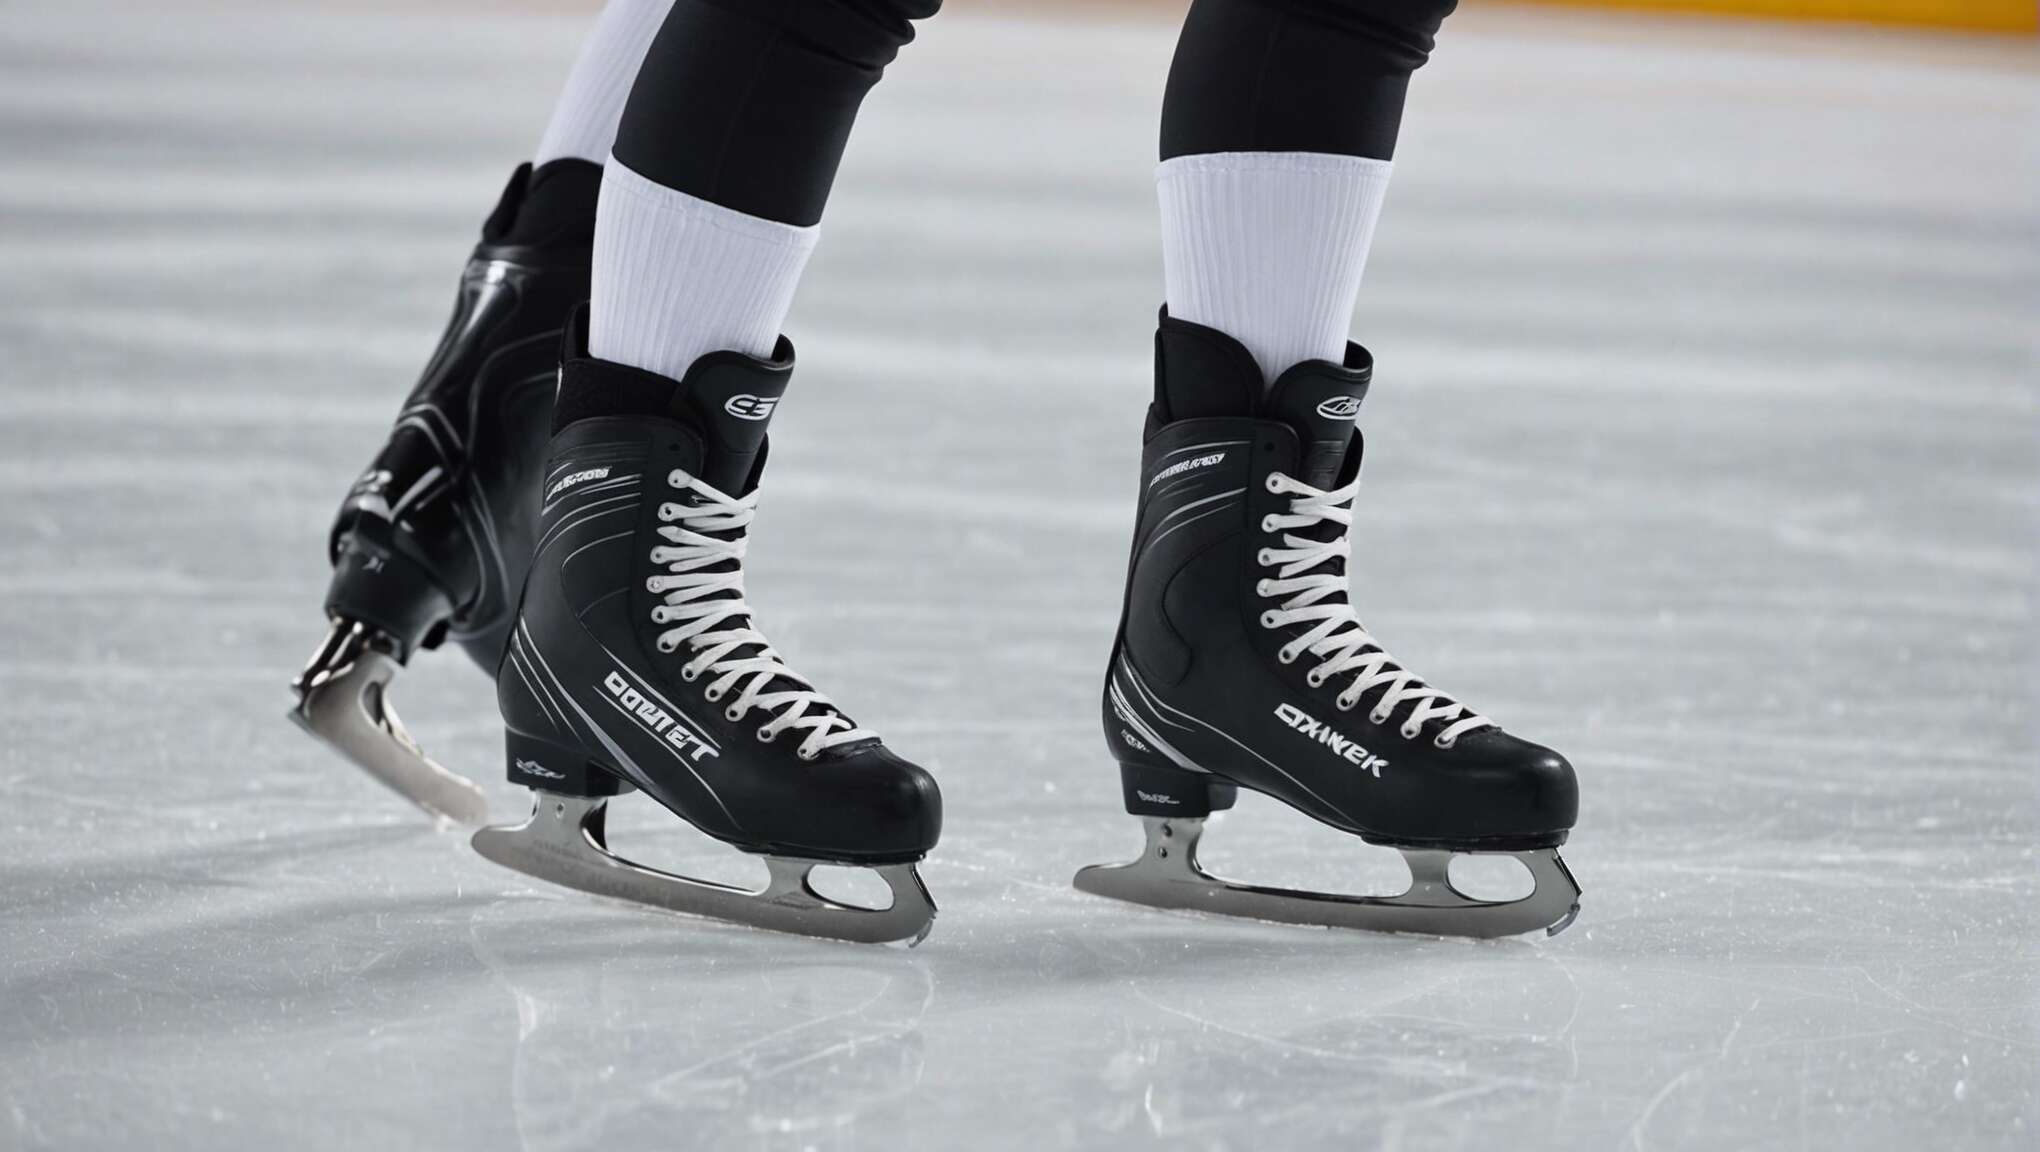 Sécurité en patinage : conseils pratiques pour éviter les blessures